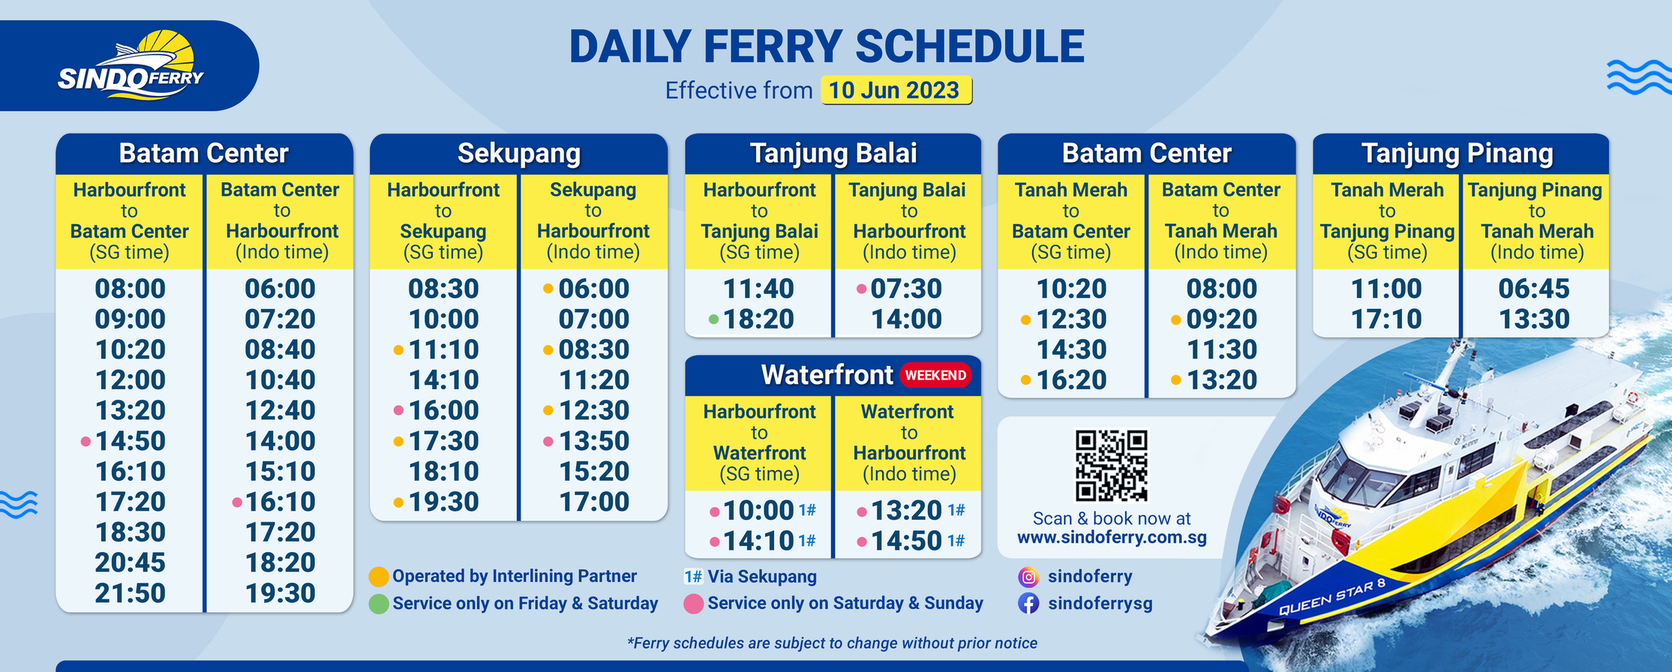 Sindo Ferry Ferry Schedule